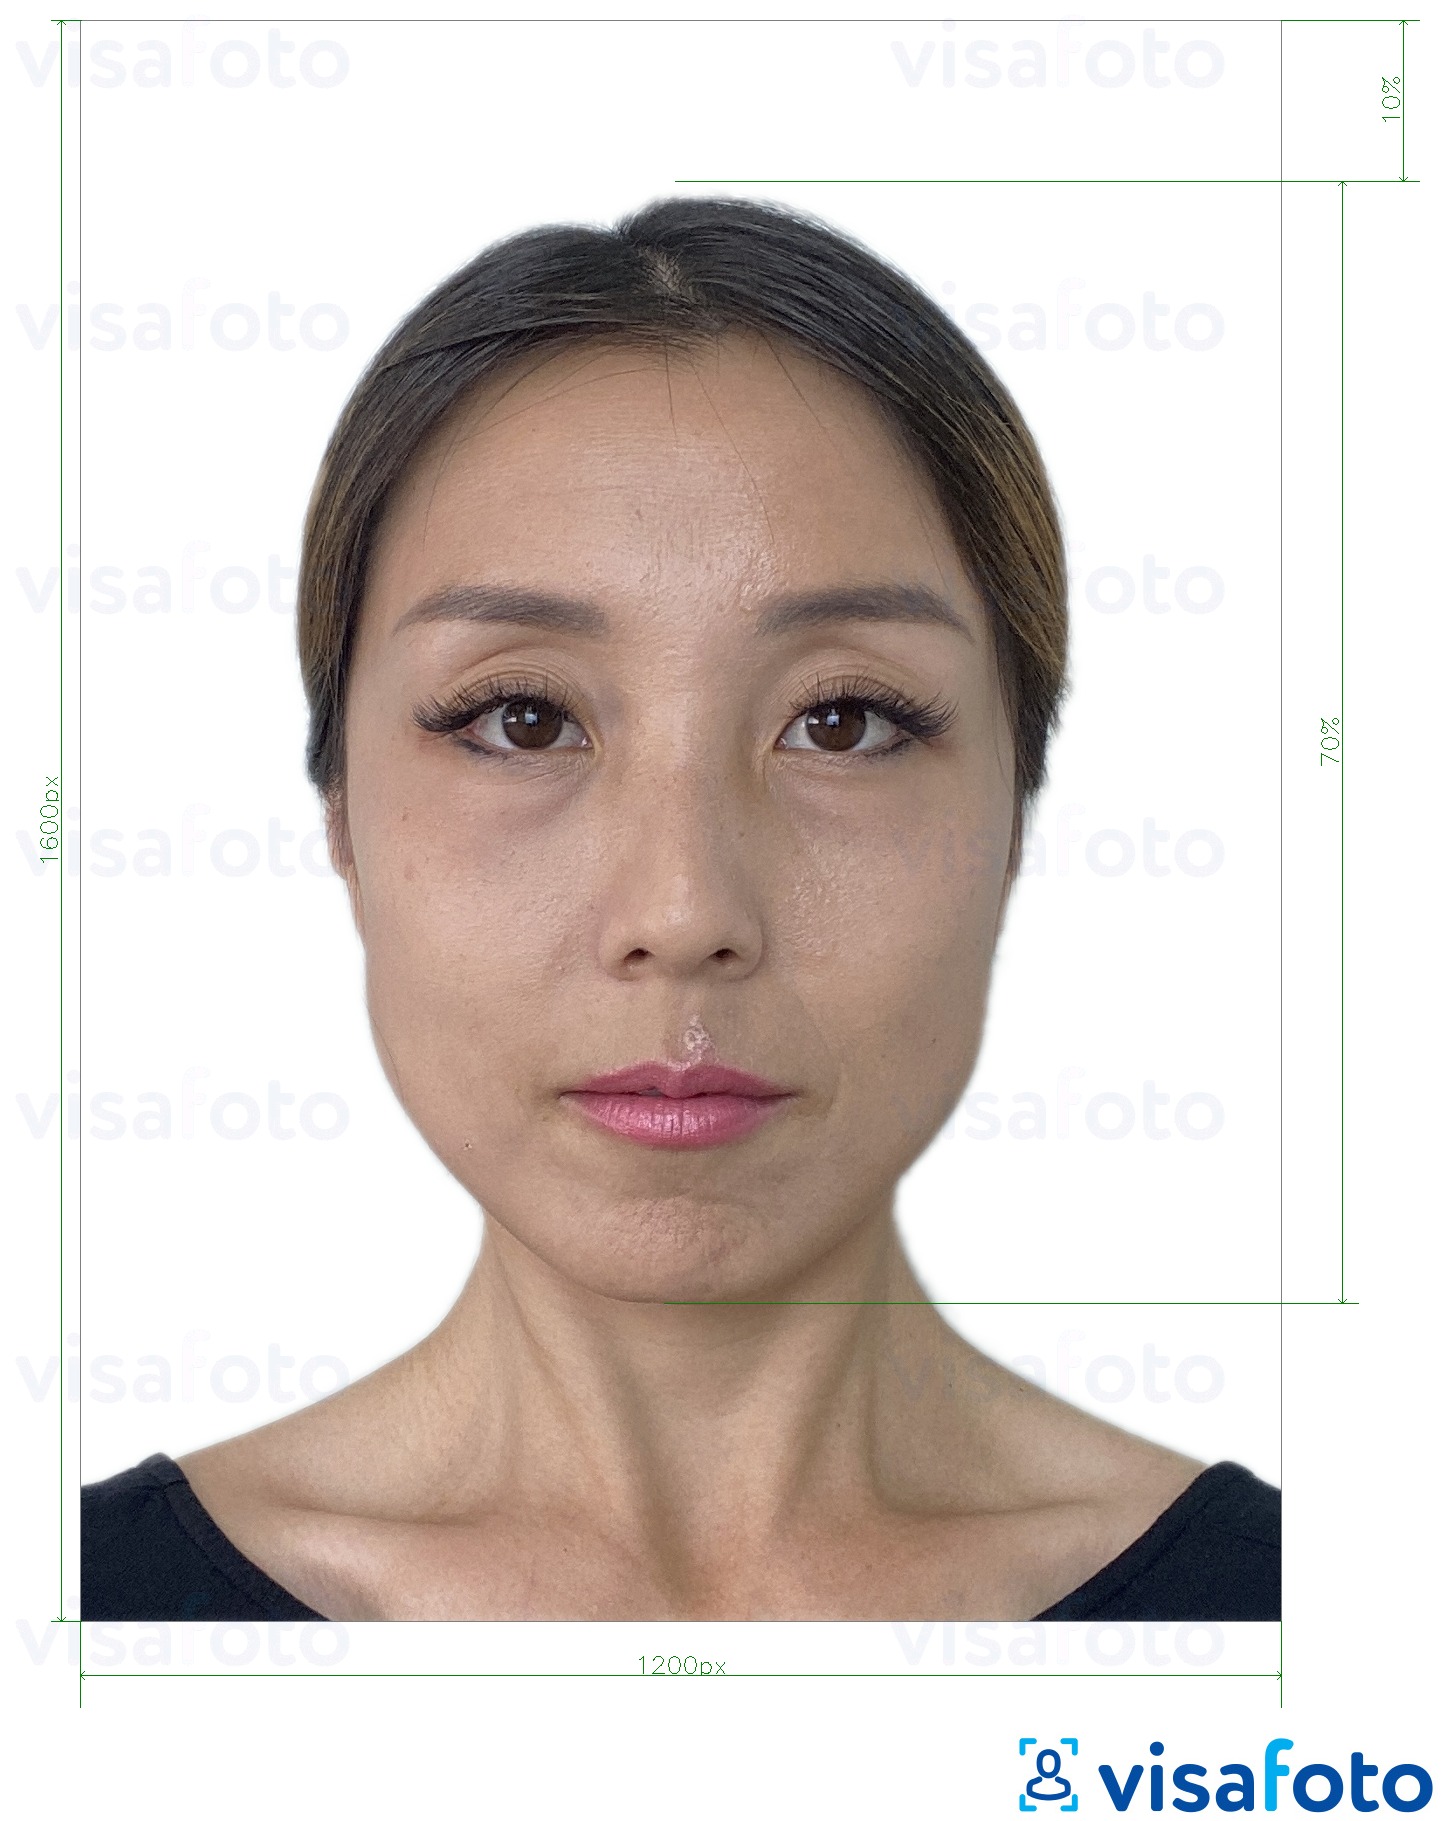 Nuotraukos pavyzdys Honkongo elektroninės vizos 1200x1600 pikselių su tikslaus dydžio specifikacija